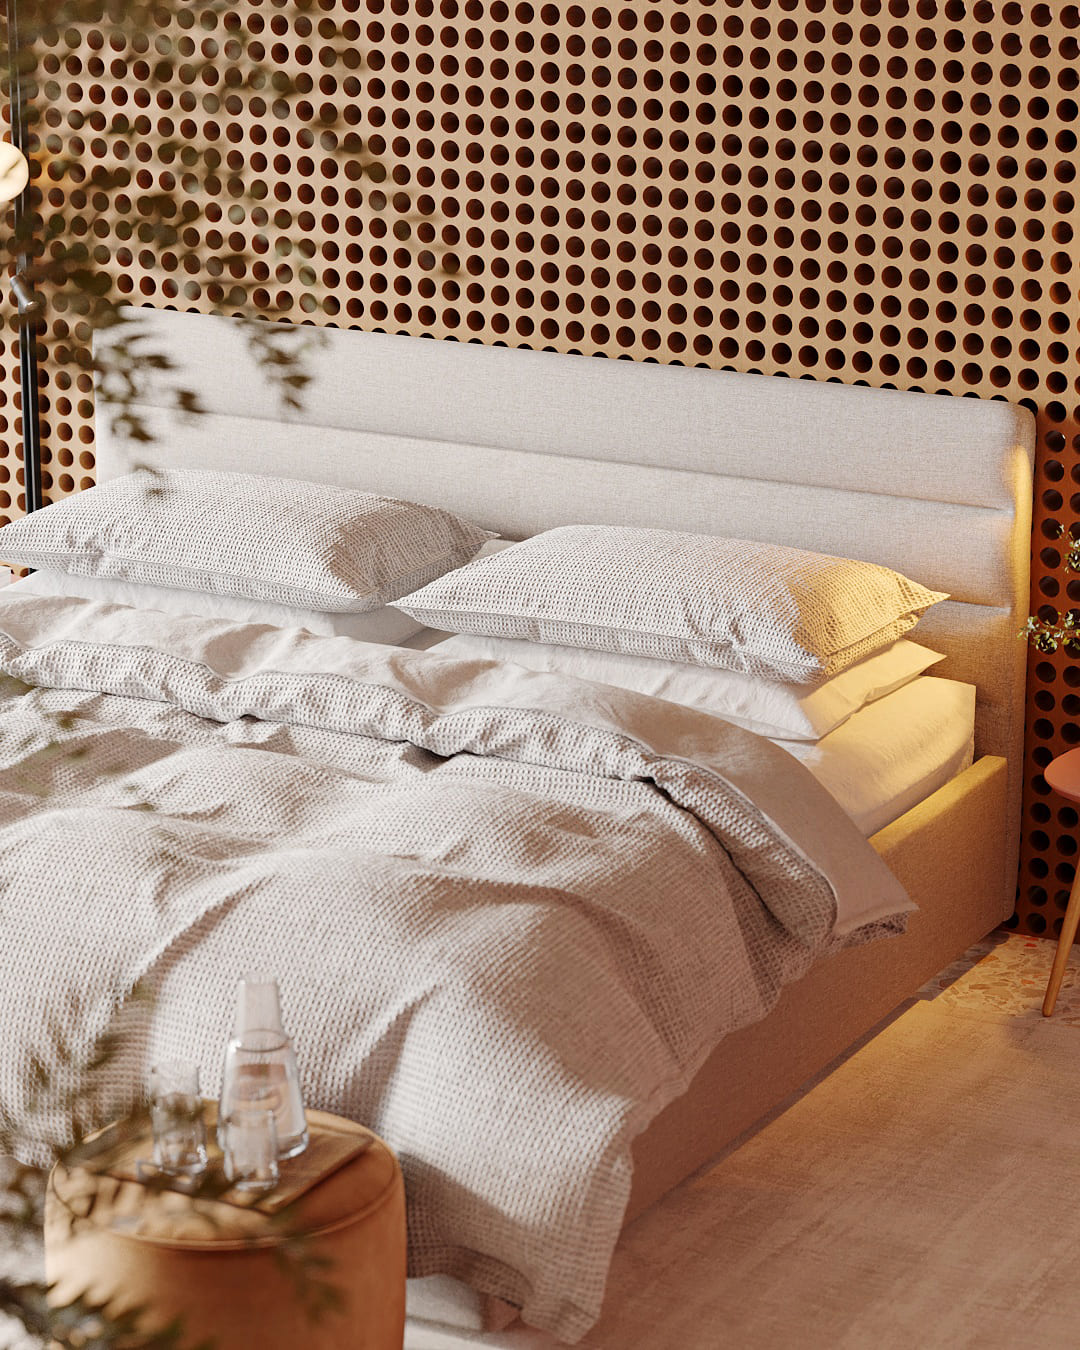 Обустраиваем современную спальню в стиле сканди: фото NaN